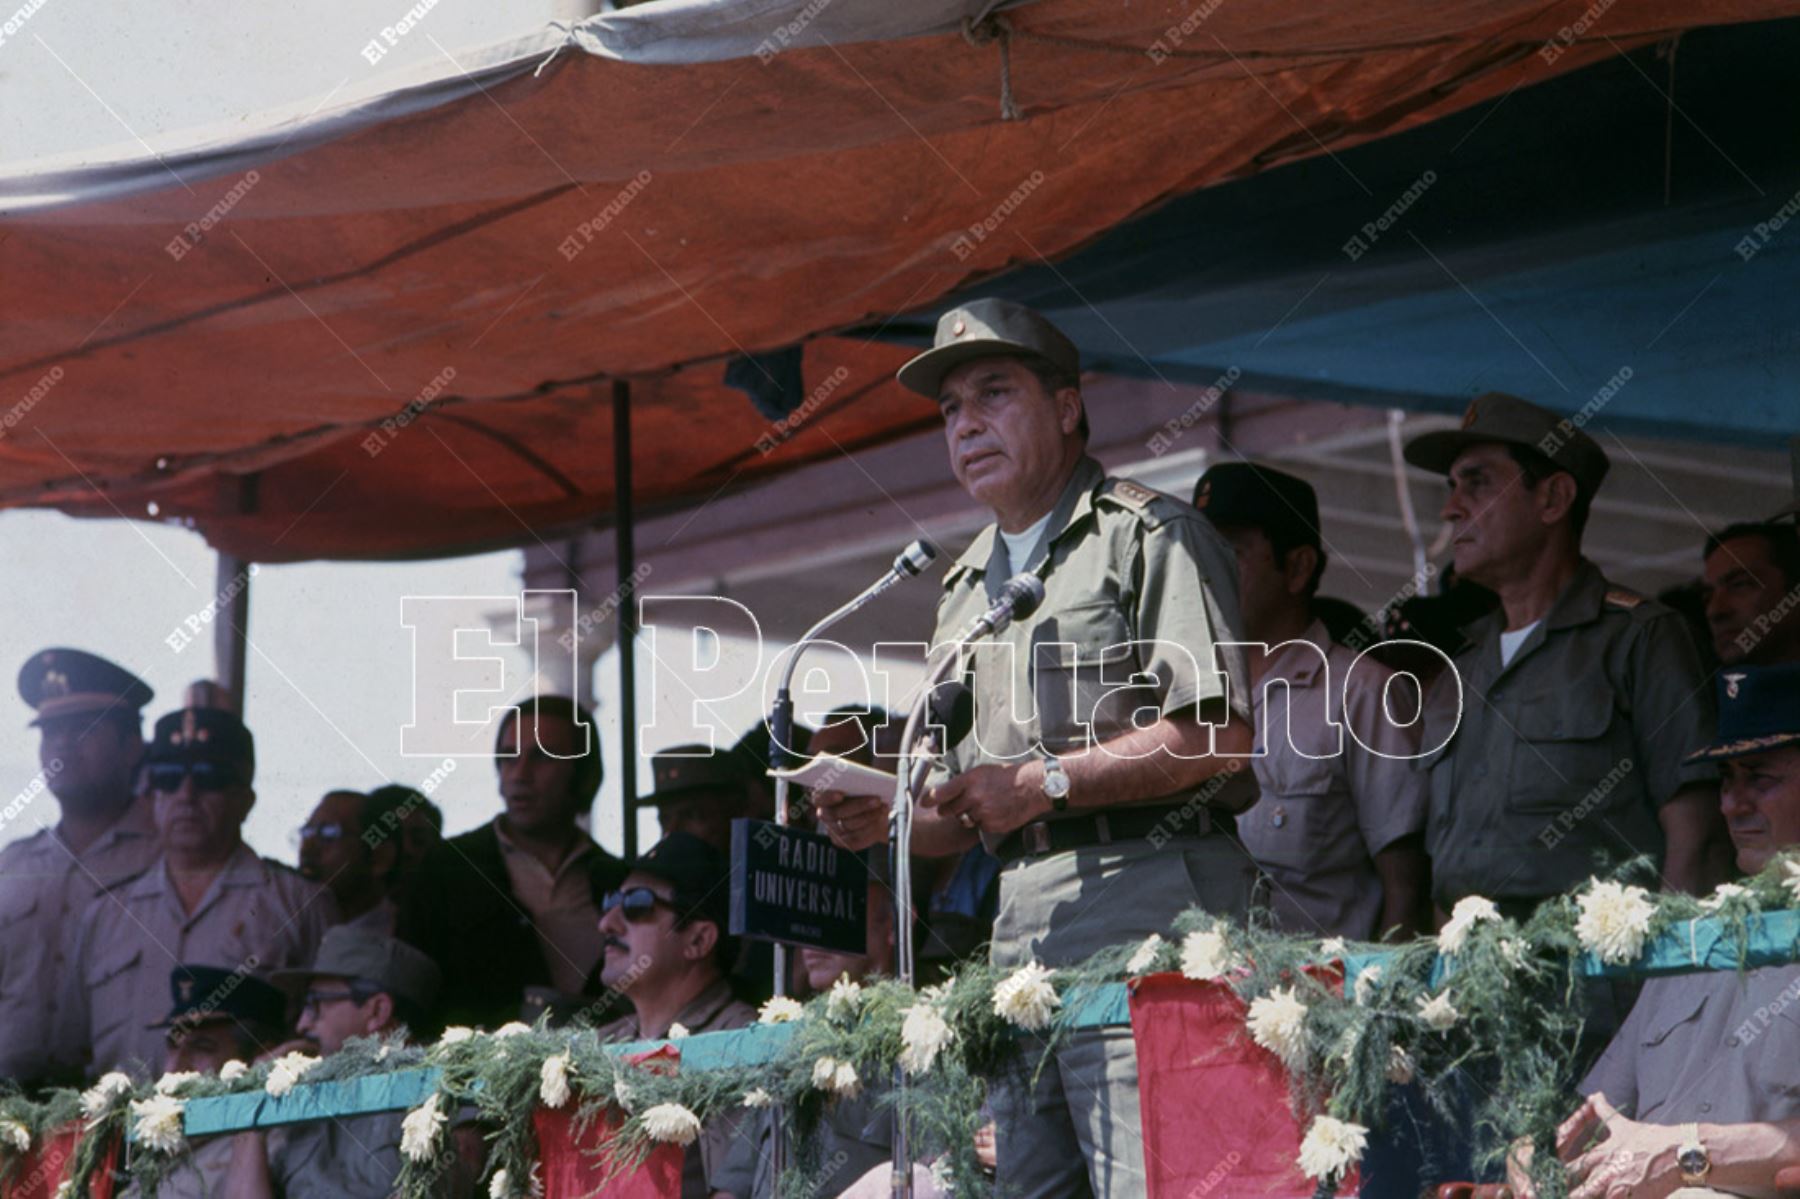 Huacho - 29 abril 1976 / El presidente Francisco Morales Bermúdez llegó a Huacho como parte de una gira al norte del país. Foto: Archivo Histórico de El Peruano / Leoncio Mariscal